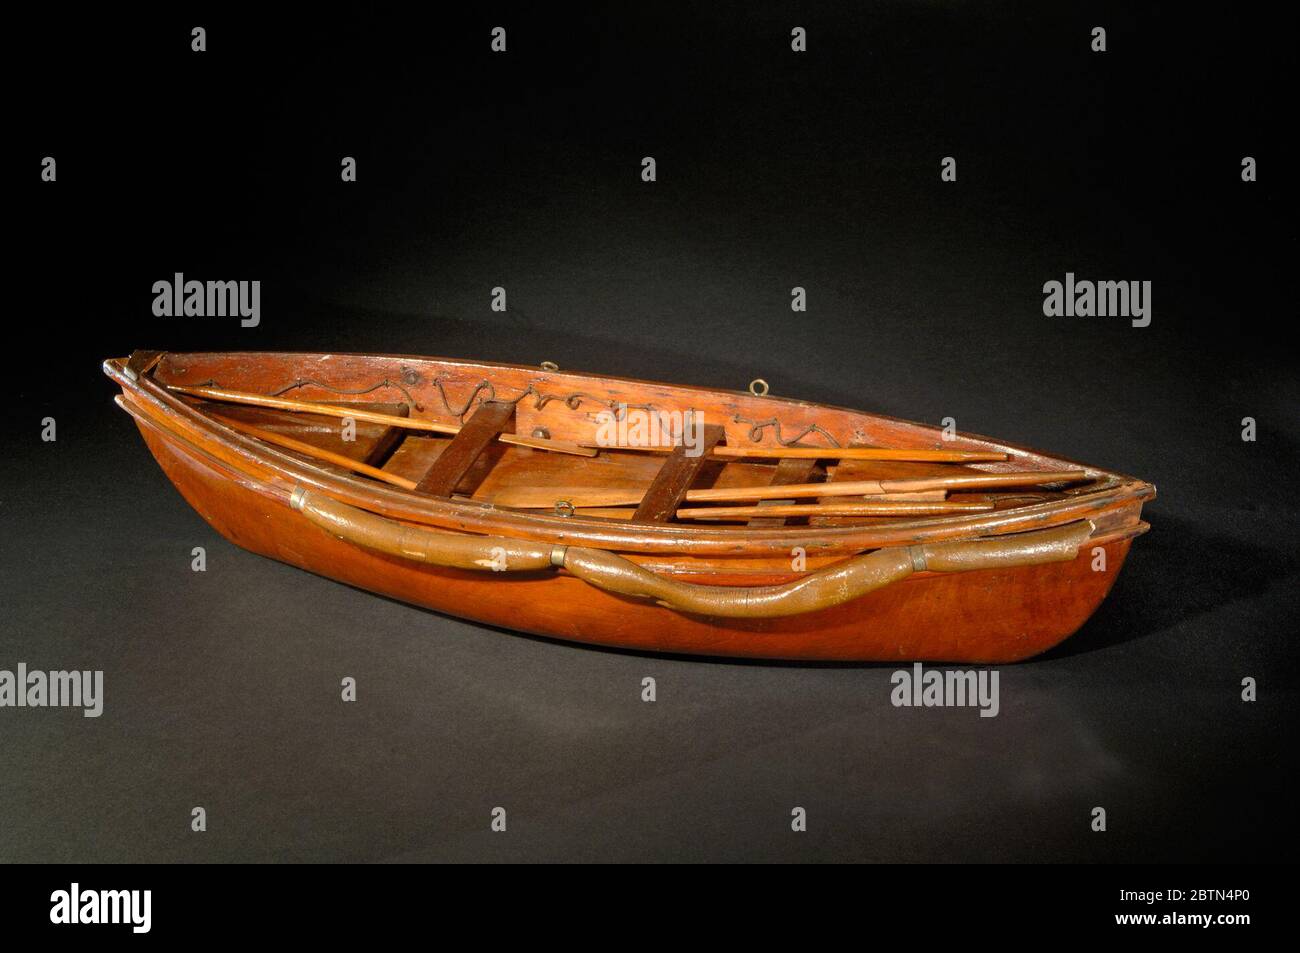 Modello di brevetto Life Boat. Anche se Joseph Francis è l'inventore più noto delle imbarcazioni salvavita nel 19 ° secolo, altre persone provenienti da diversi settori della vita hanno sviluppato le proprie idee per migliorare la sicurezza in mare. Tra questi vi erano due pescatori di Peaks Island vicino a Portland, Maine, Alpheus G. Foto Stock